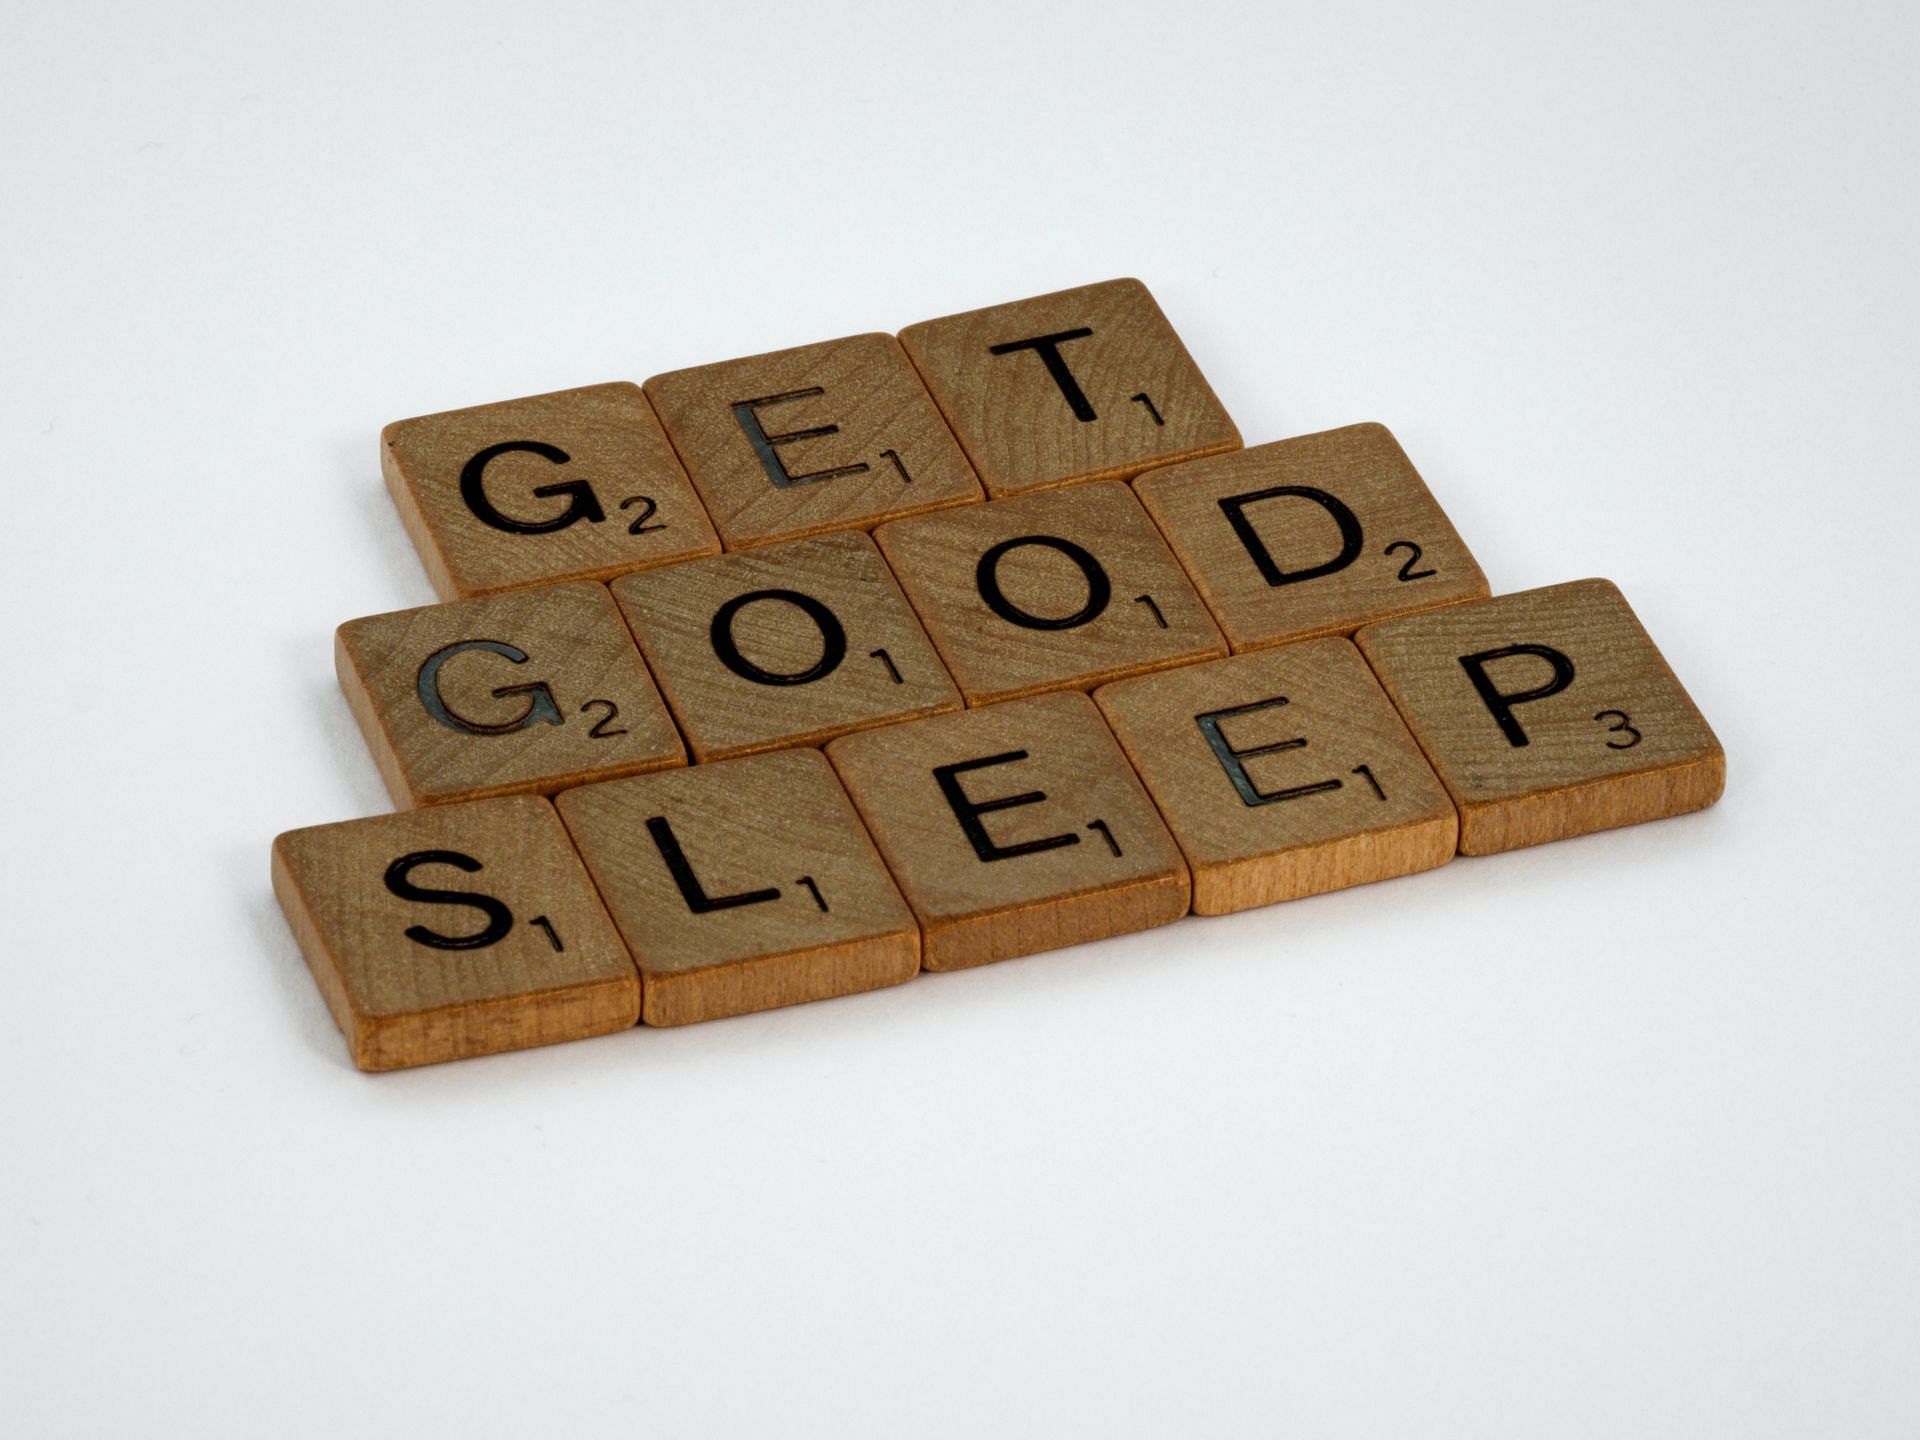 Sleep is crucial. (Image via Unsplash/Brett Jordan)